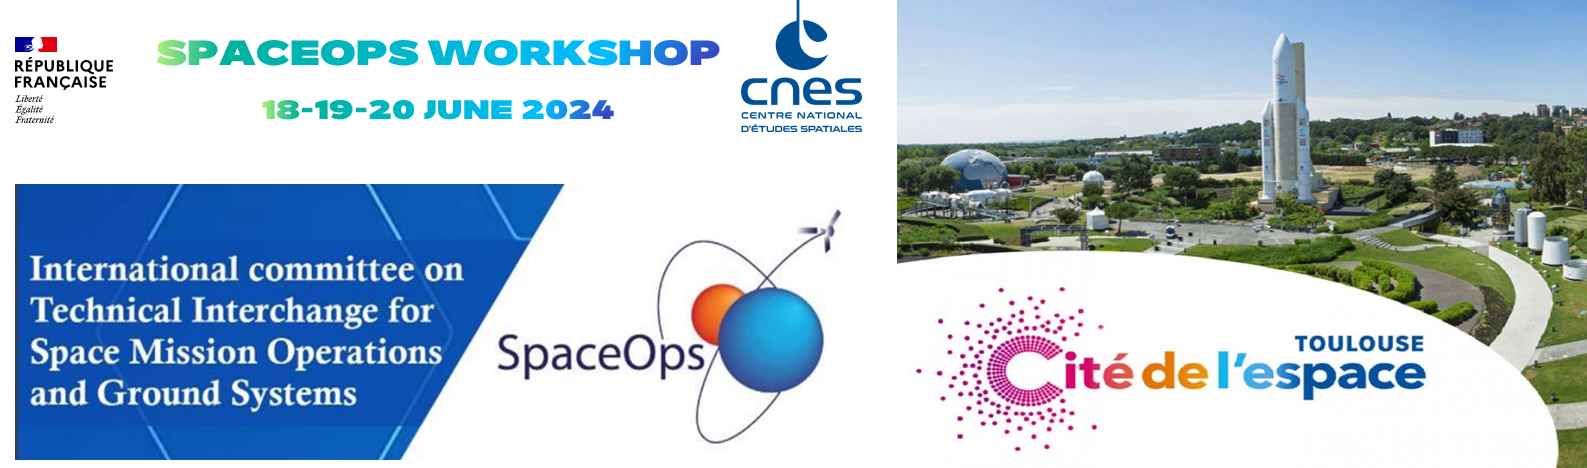 SpaceOps Workshop 2024